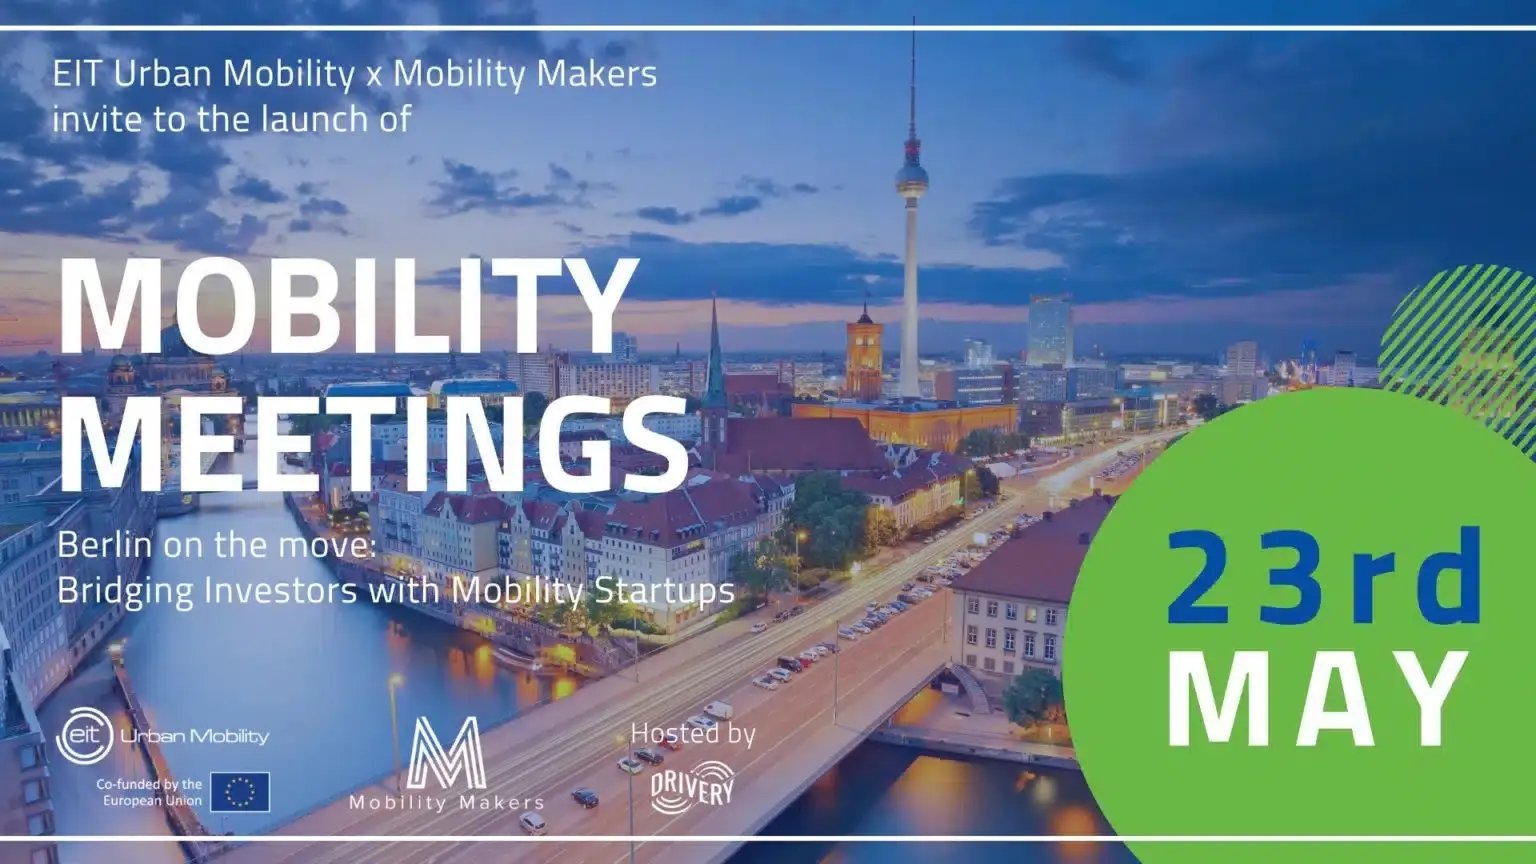 Mobility-Meetings-in-Berlin-1920x1080-2-1536x864.jpg